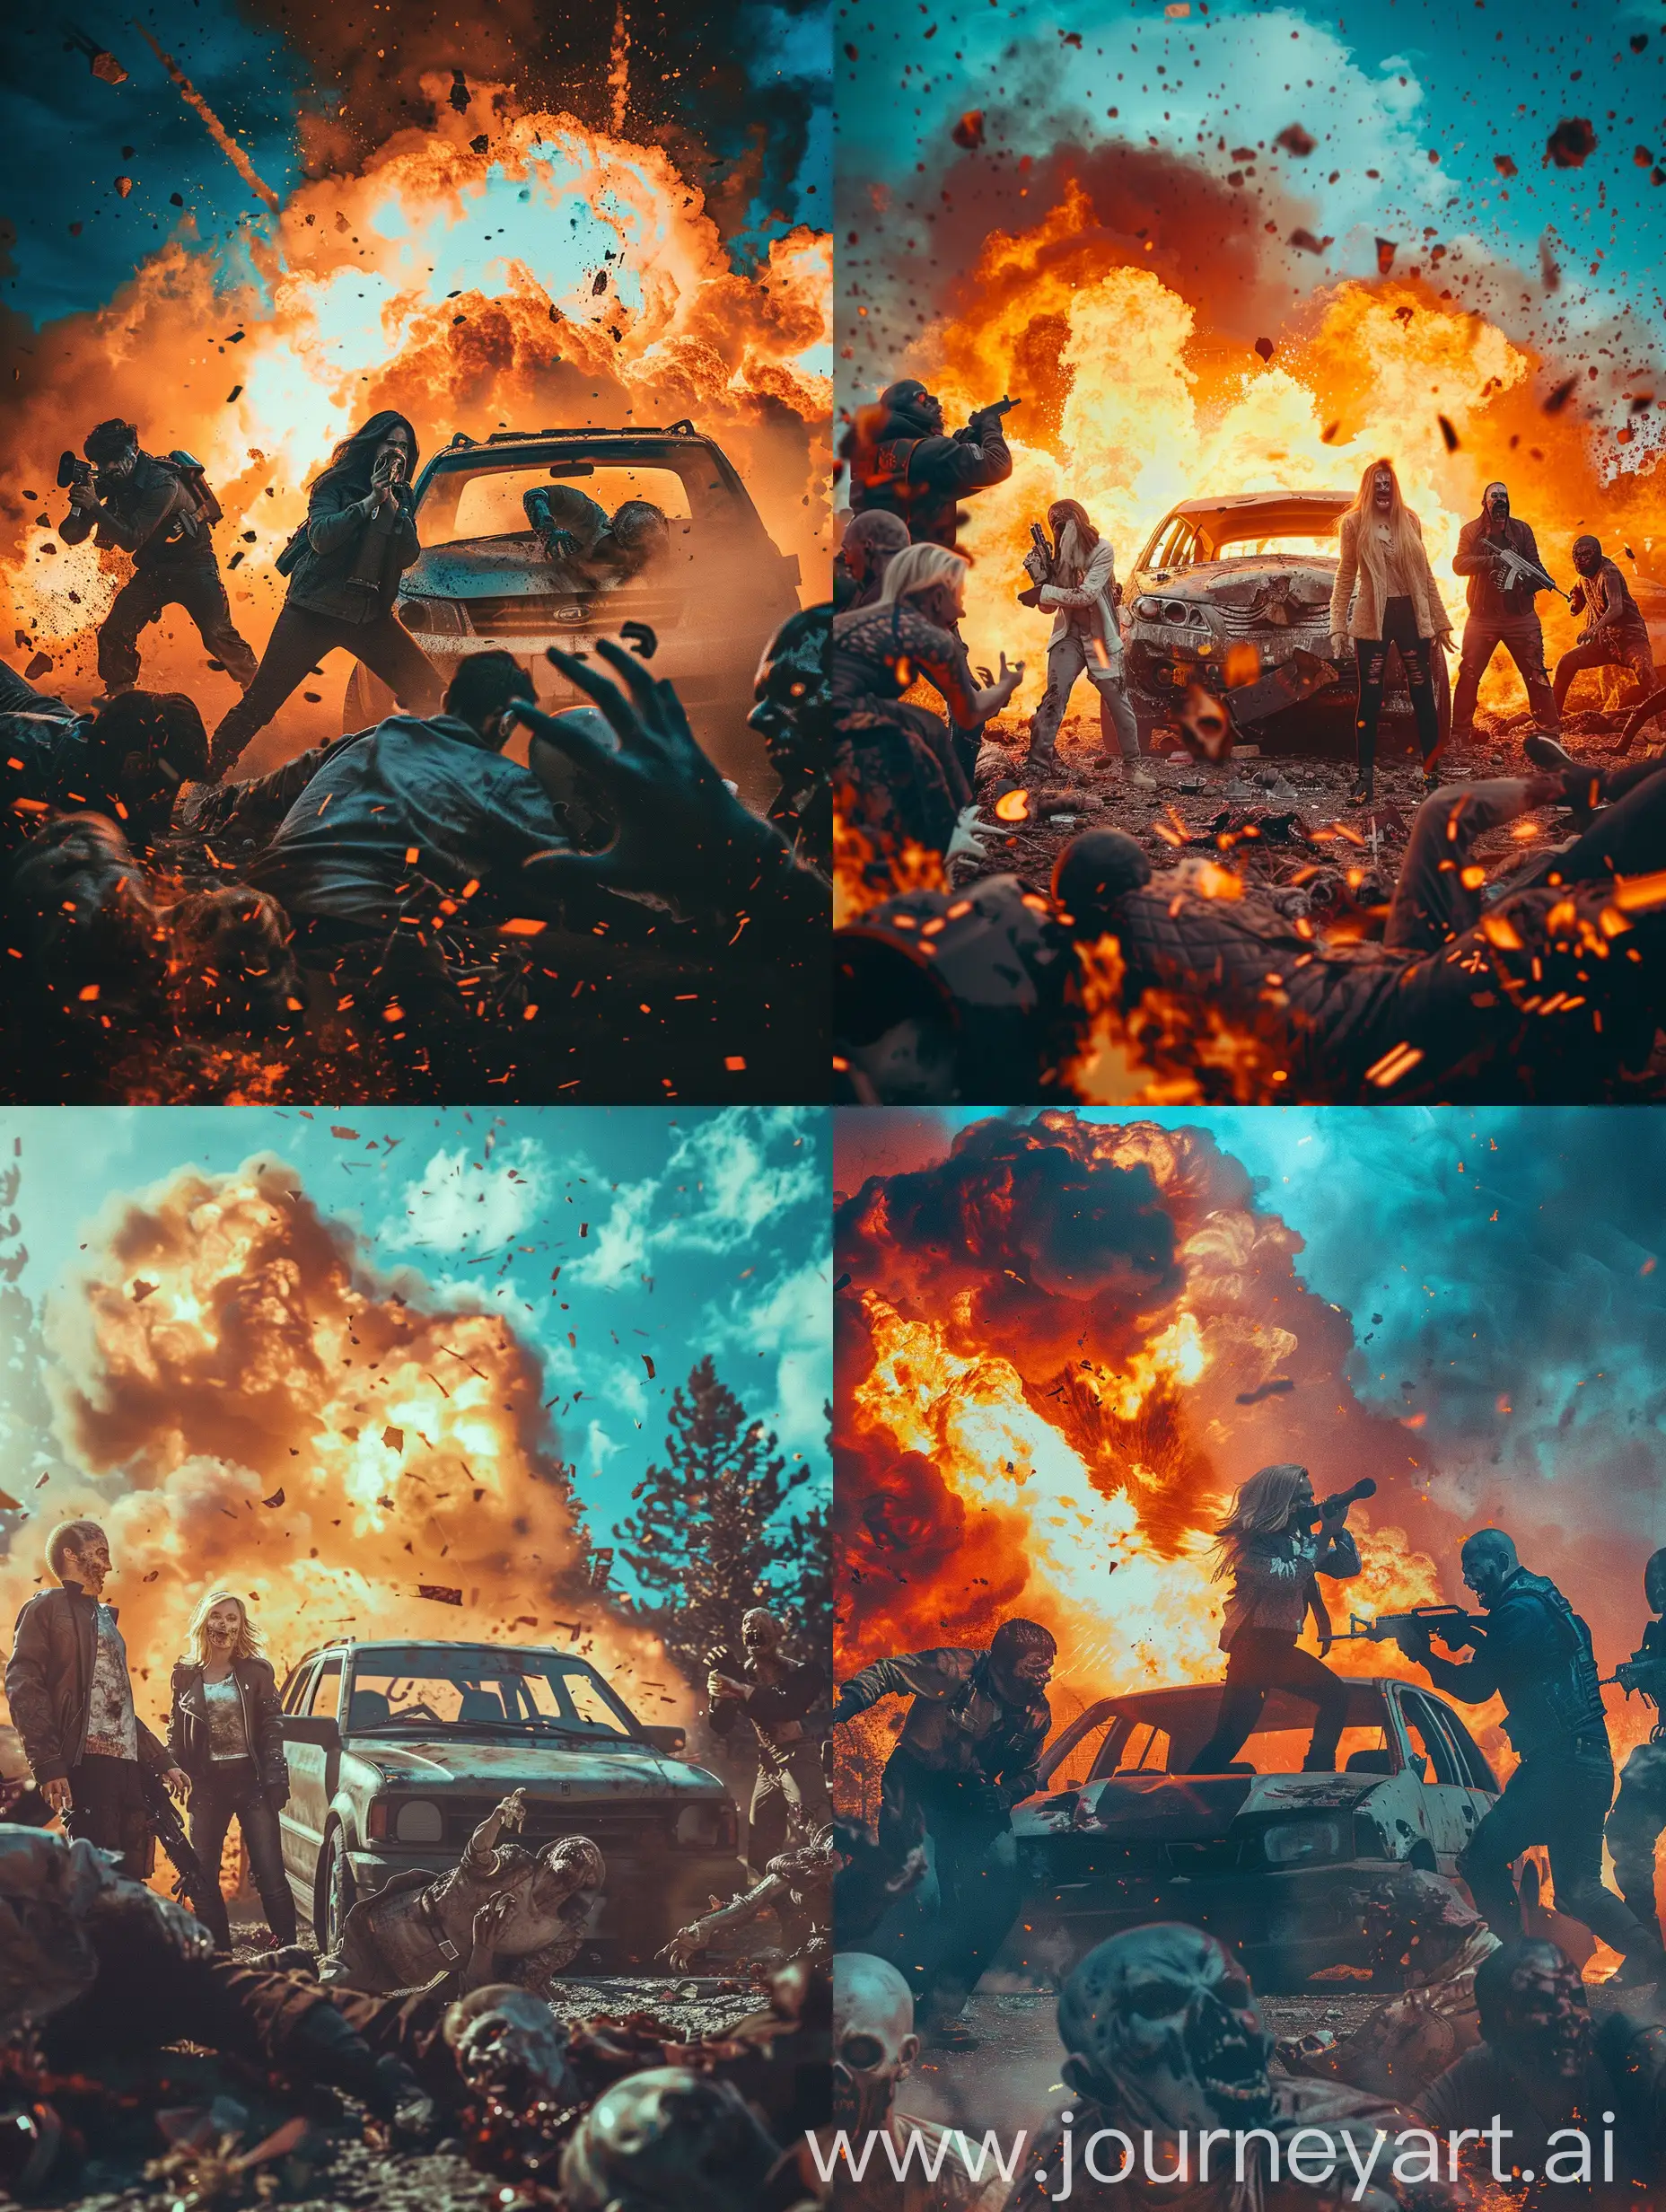 Сцена постапокалипсиса в реальной жизни, по мотивам мобильной игры Doomsday, команда бойцов из мужчин и женщин на фоне взрывающейся машины в окружении зомби